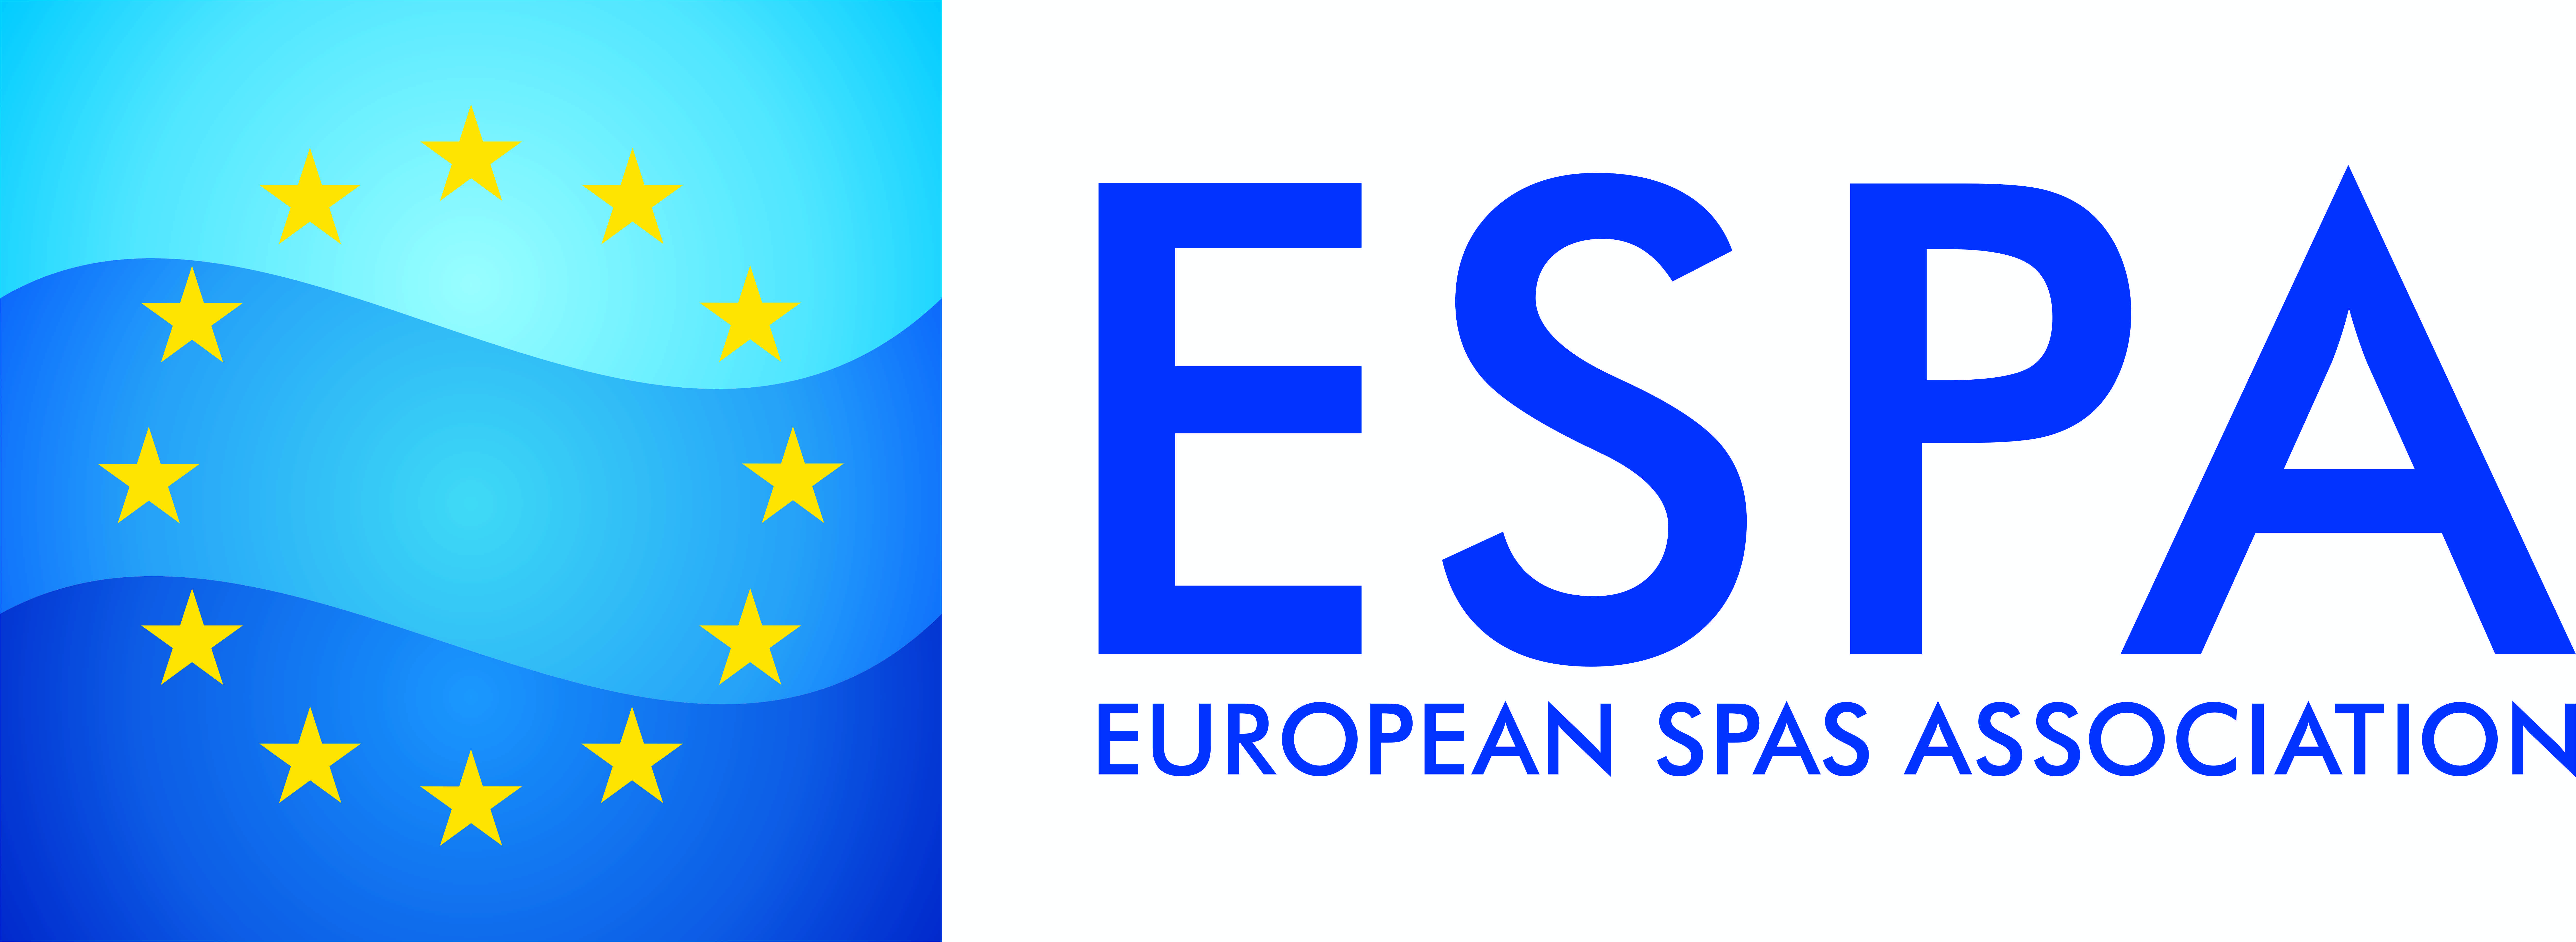 Espa Logo - SPA CE. Slovenian Spas Association Became The Newest ESPA Member